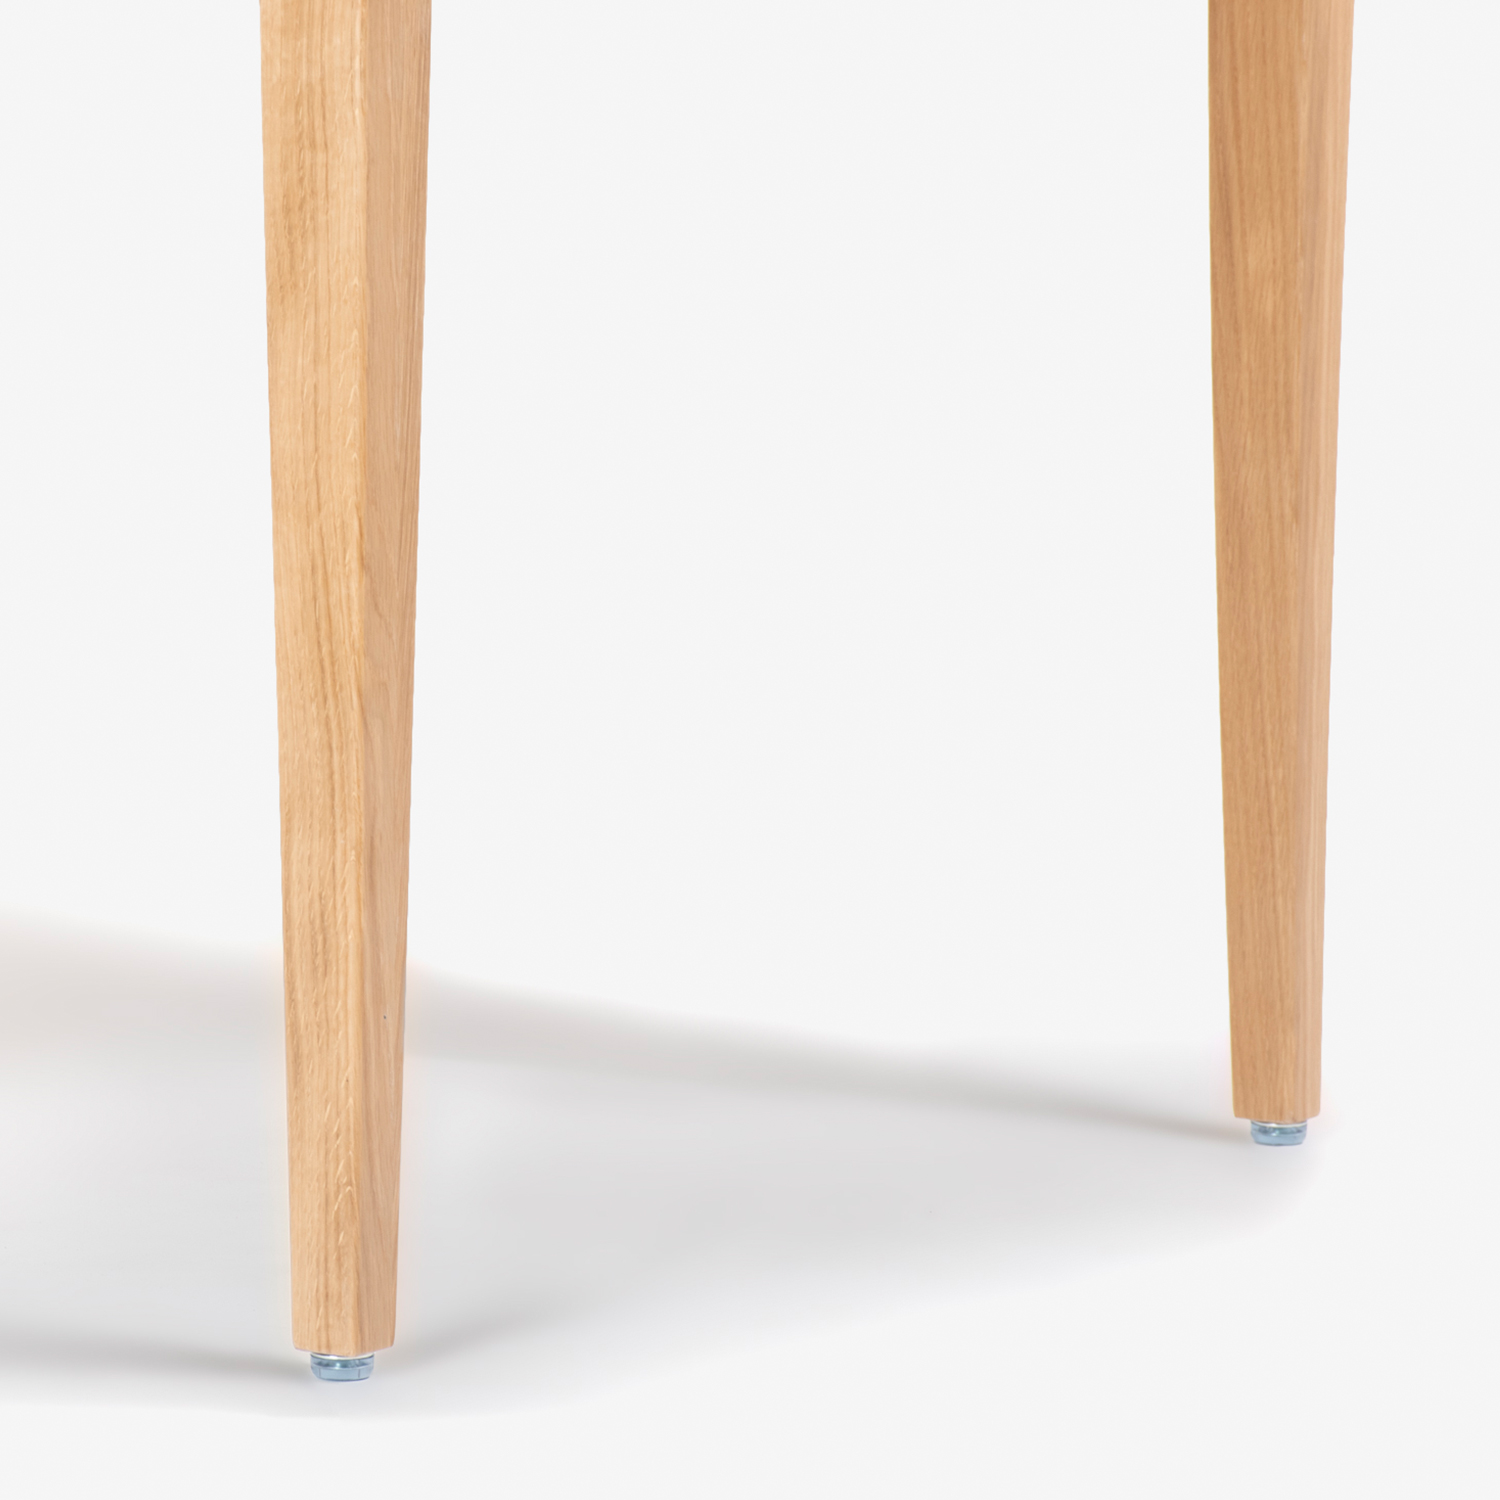 秋田木工 ダイニングテーブル「N-T005」ナラ材 ホワイトオーク色 全3サイズ【在庫商品特別ご提供価格のため20%off】